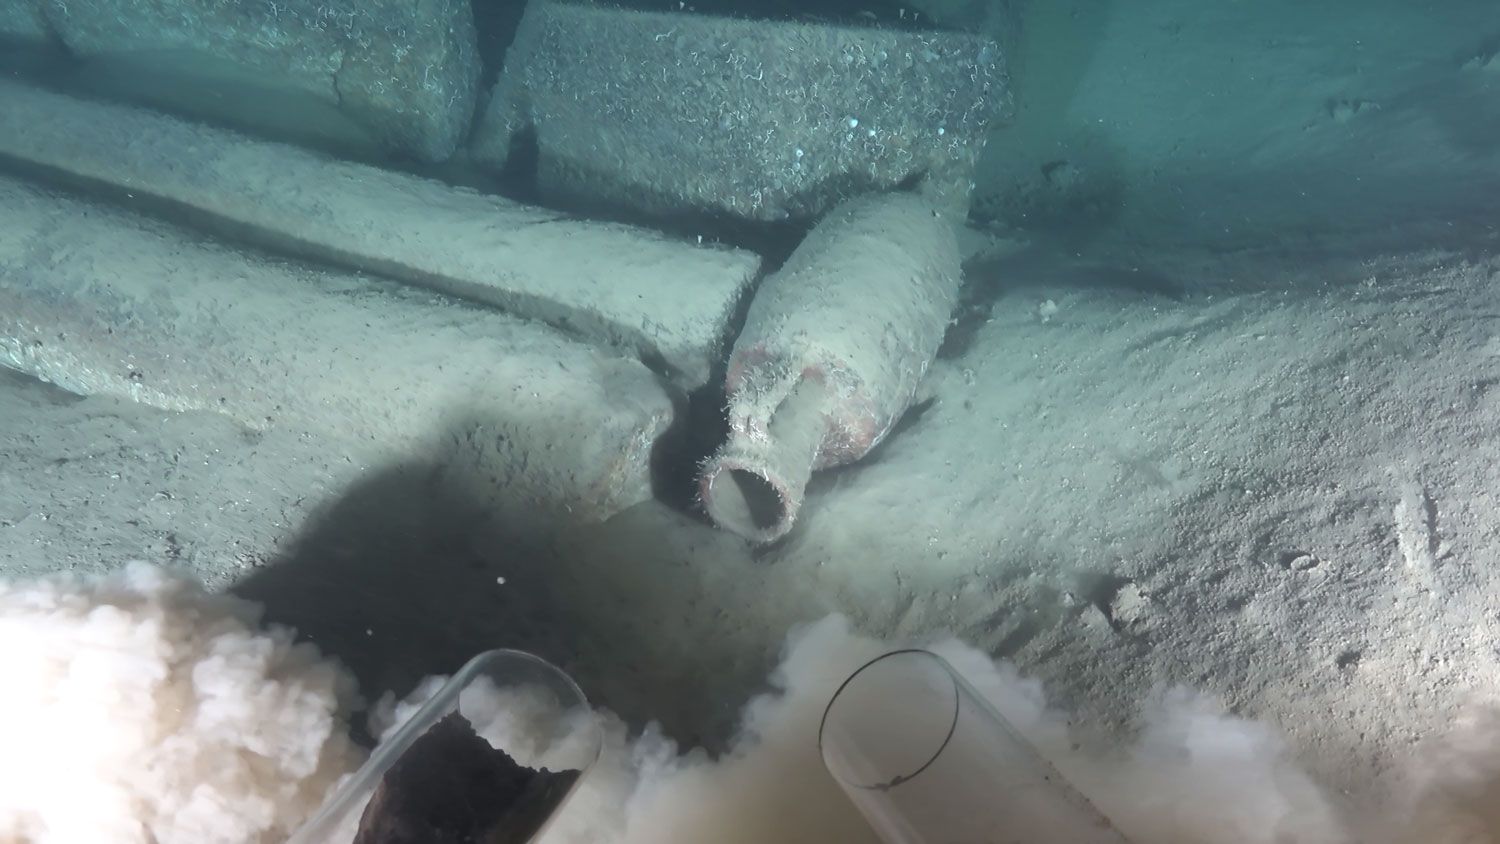 Casa Mediterráneo en el proyecto de arqueologia submarina de la Unesco